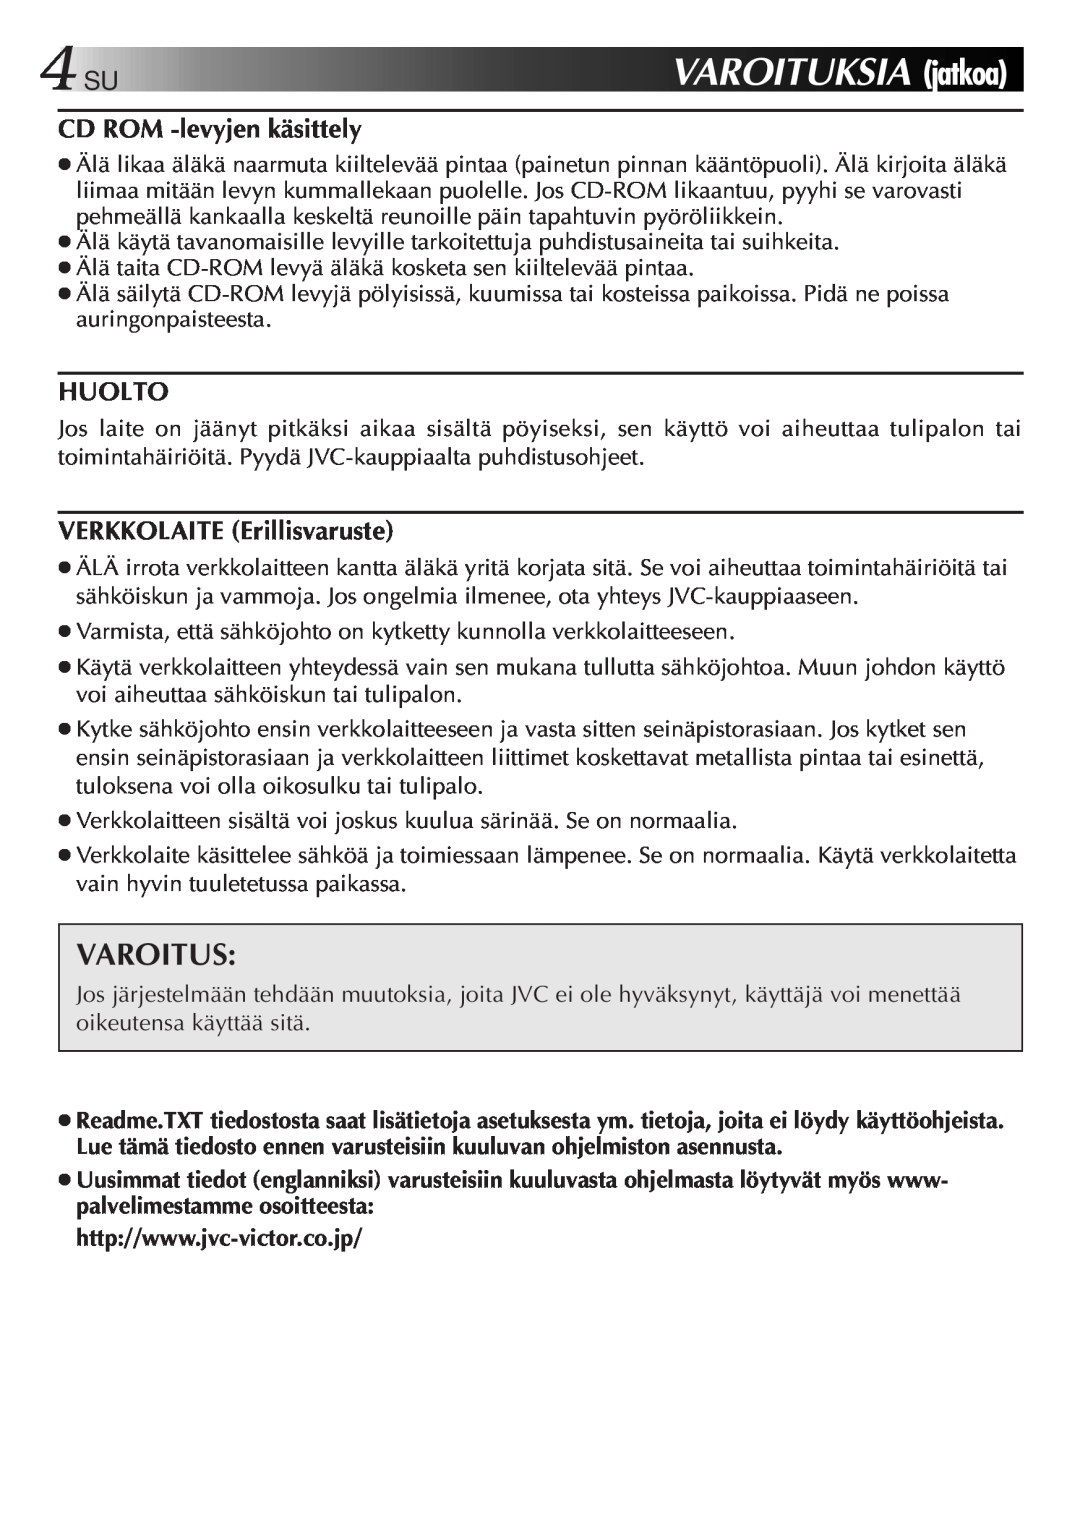 JVC GV-CB3E manual VAROITUKSIA jatkoa, Varoitus, CD ROM -levyjenkäsittely, Huolto, VERKKOLAITE Erillisvaruste 